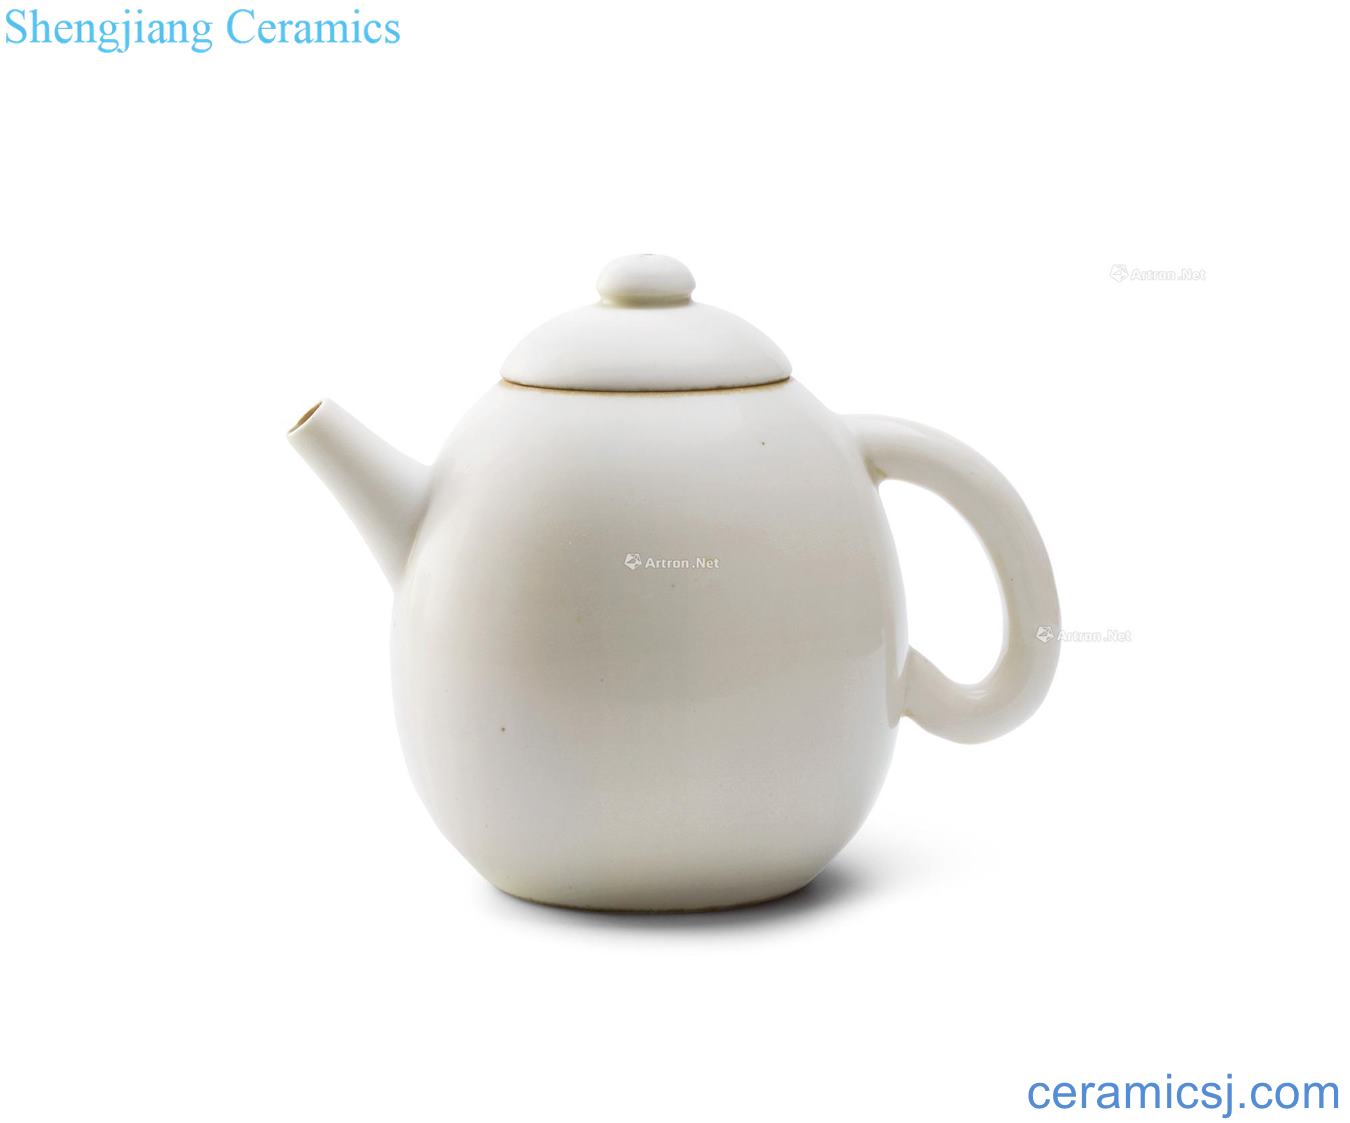 Ming dehua white glazed pot